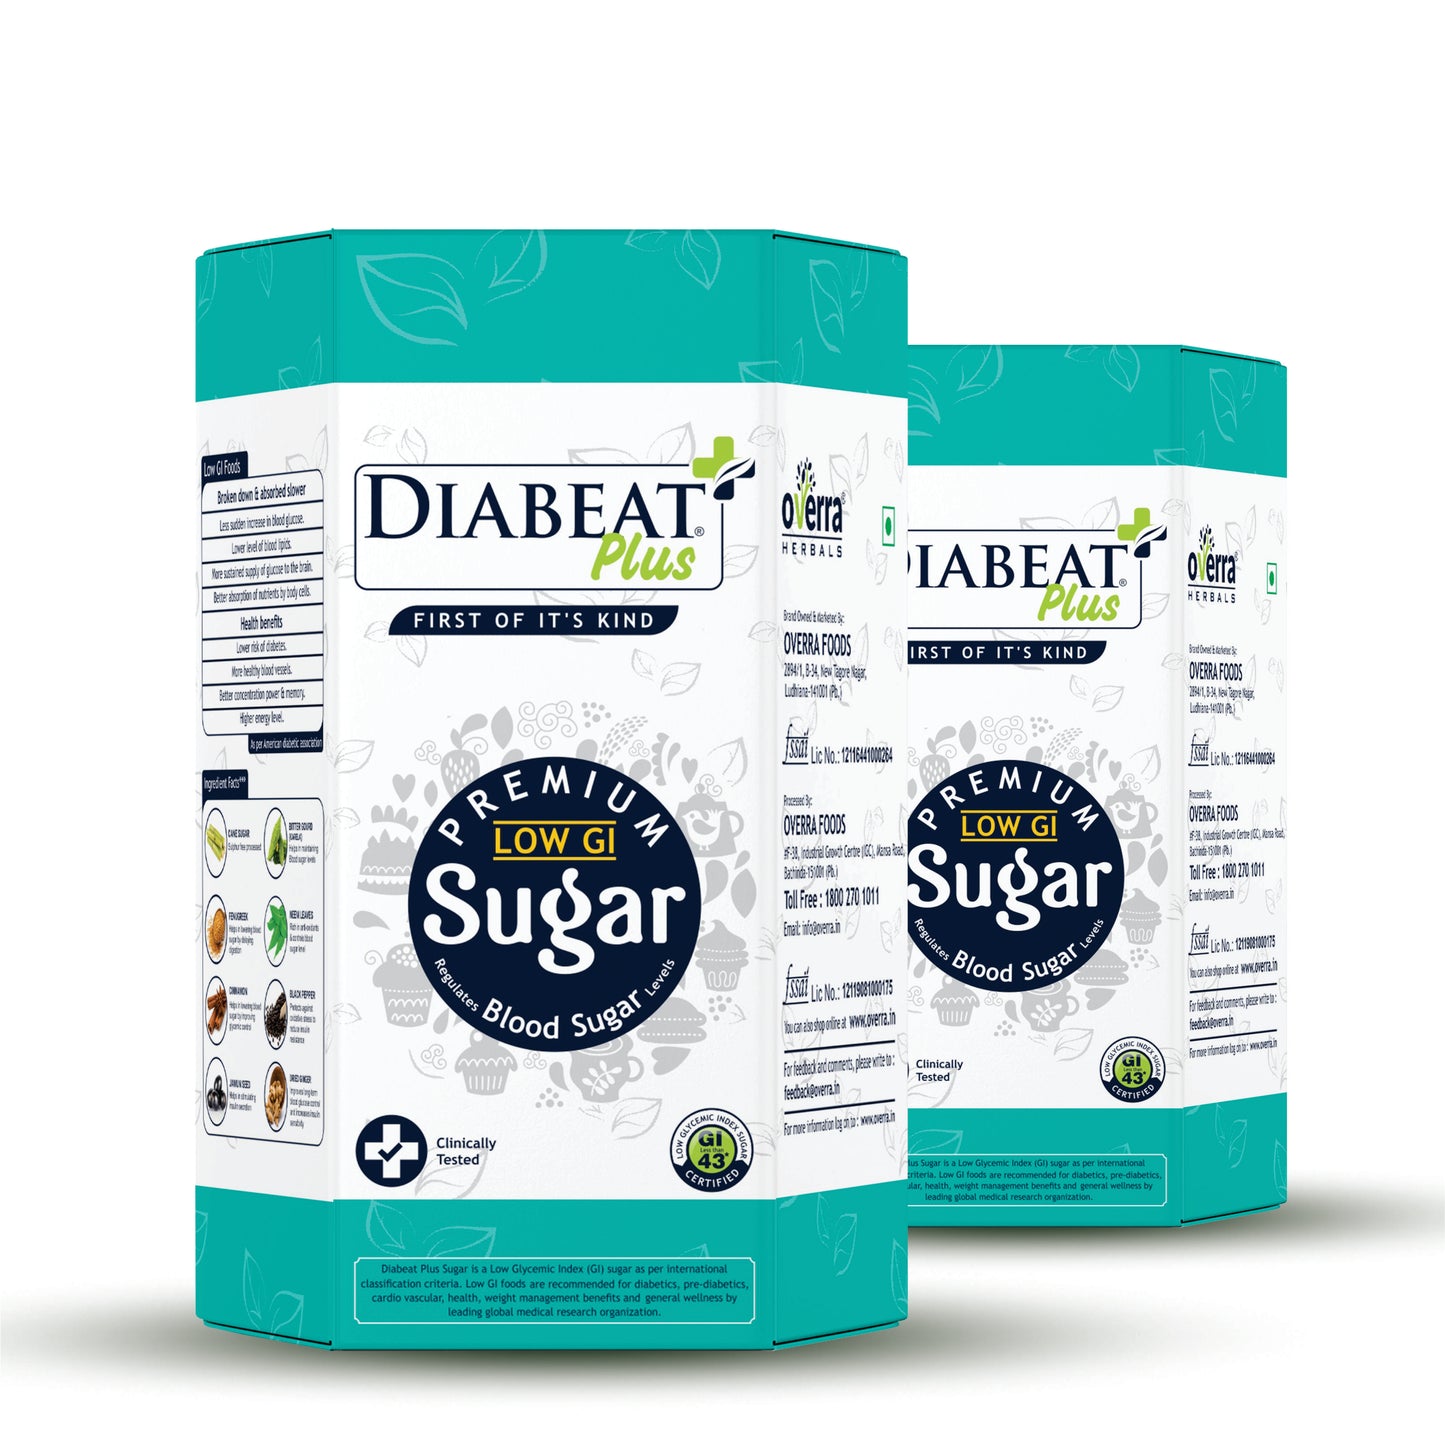 Diabeat sugar for diabetes patients